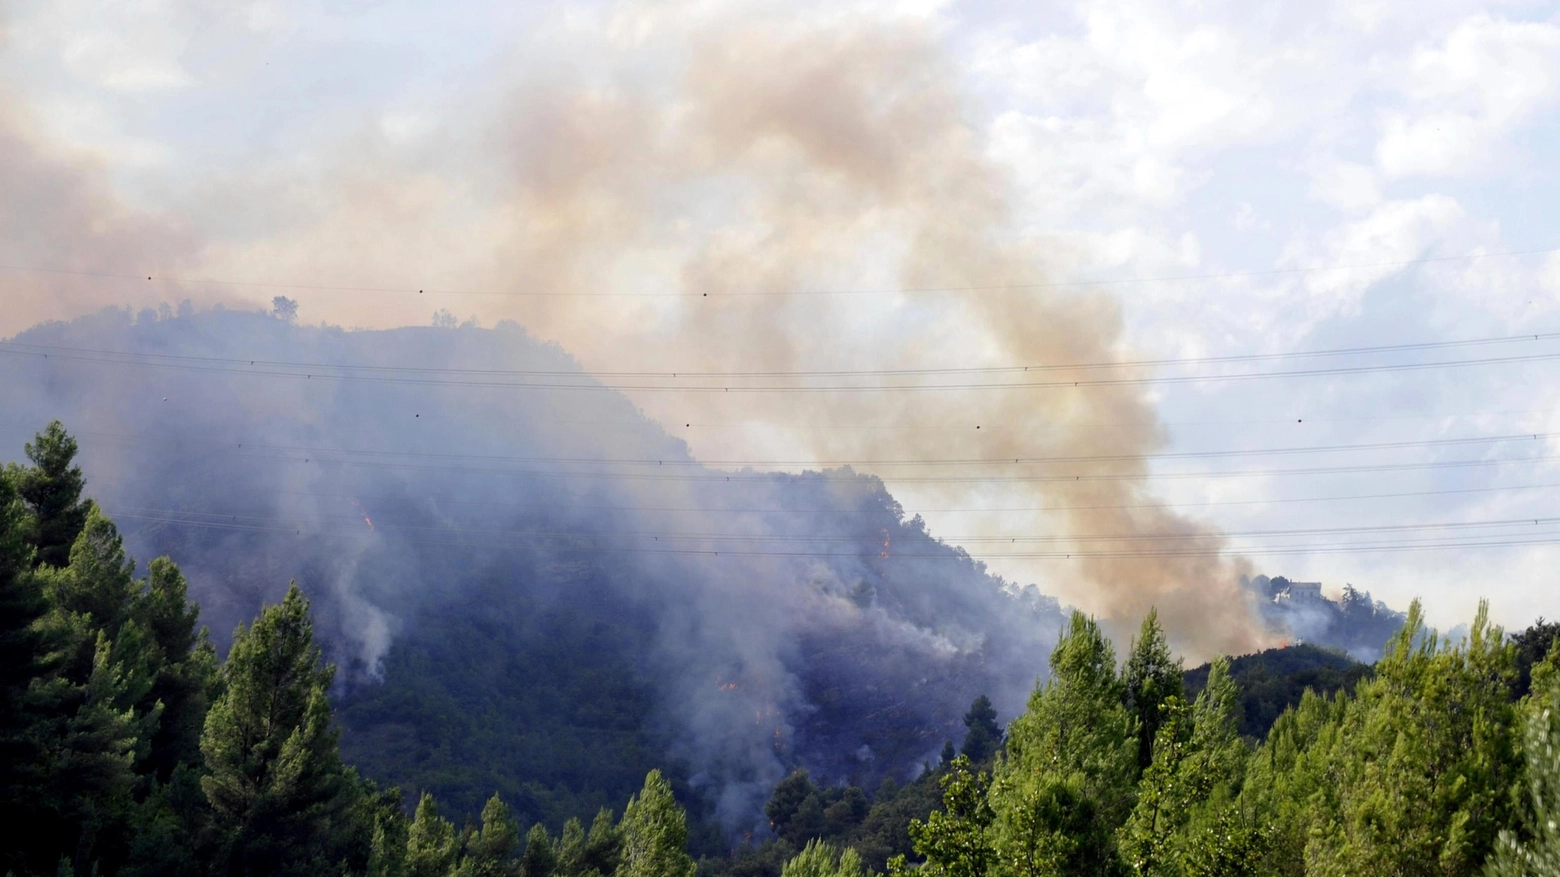 Scontro tra tornado, l'incendio causato dall'incidente nel cielo di Ascoli (Ansa)